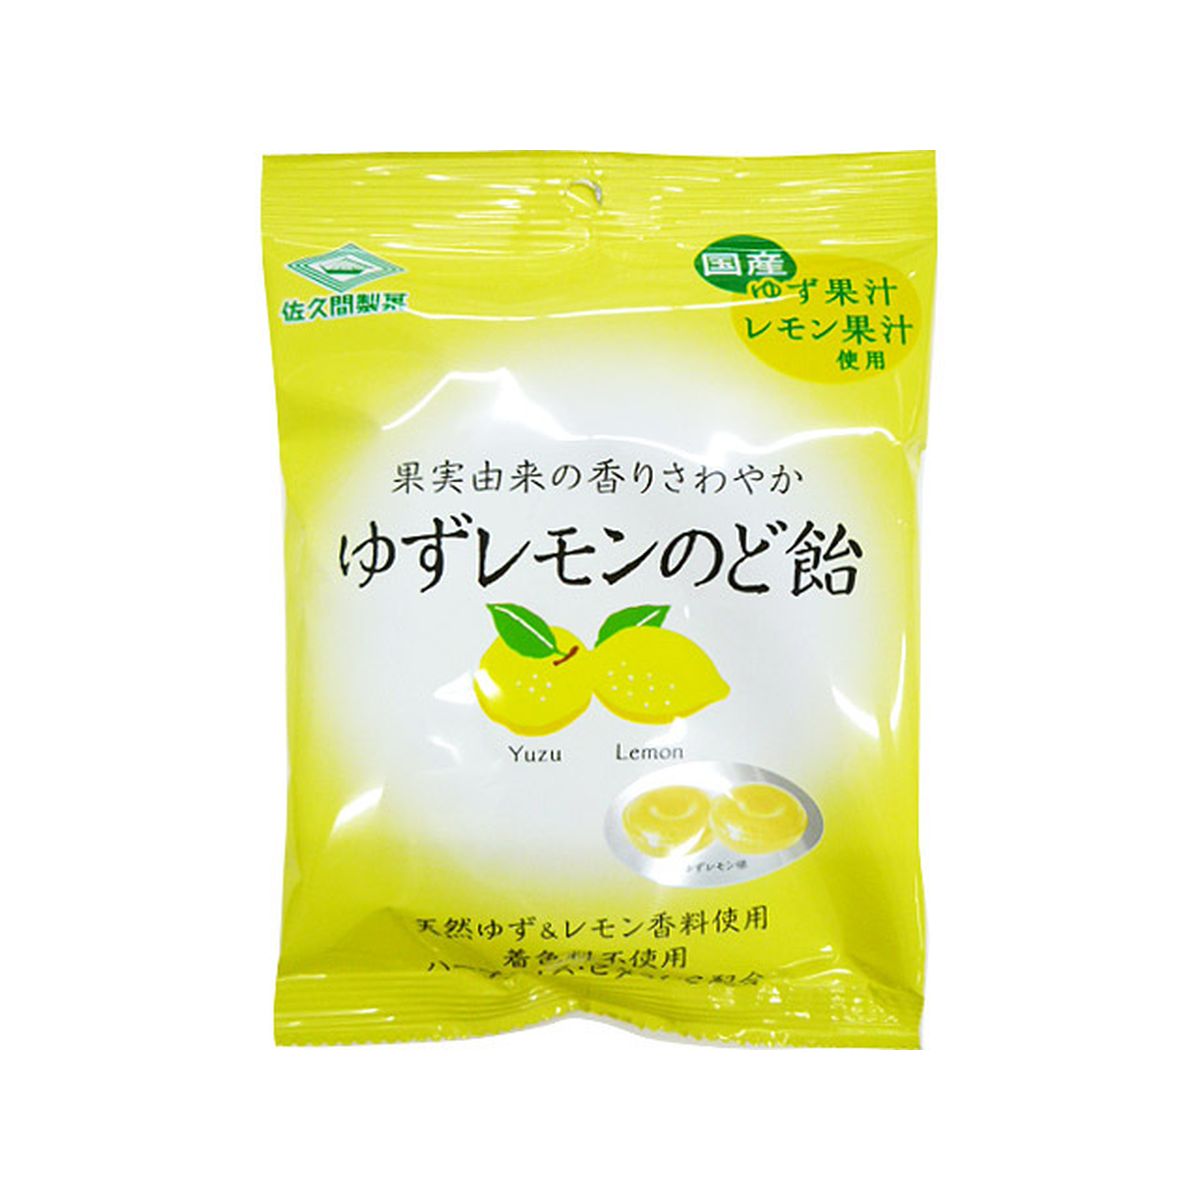 【6個入り】佐久間製菓 ゆずレモンのど飴 75g